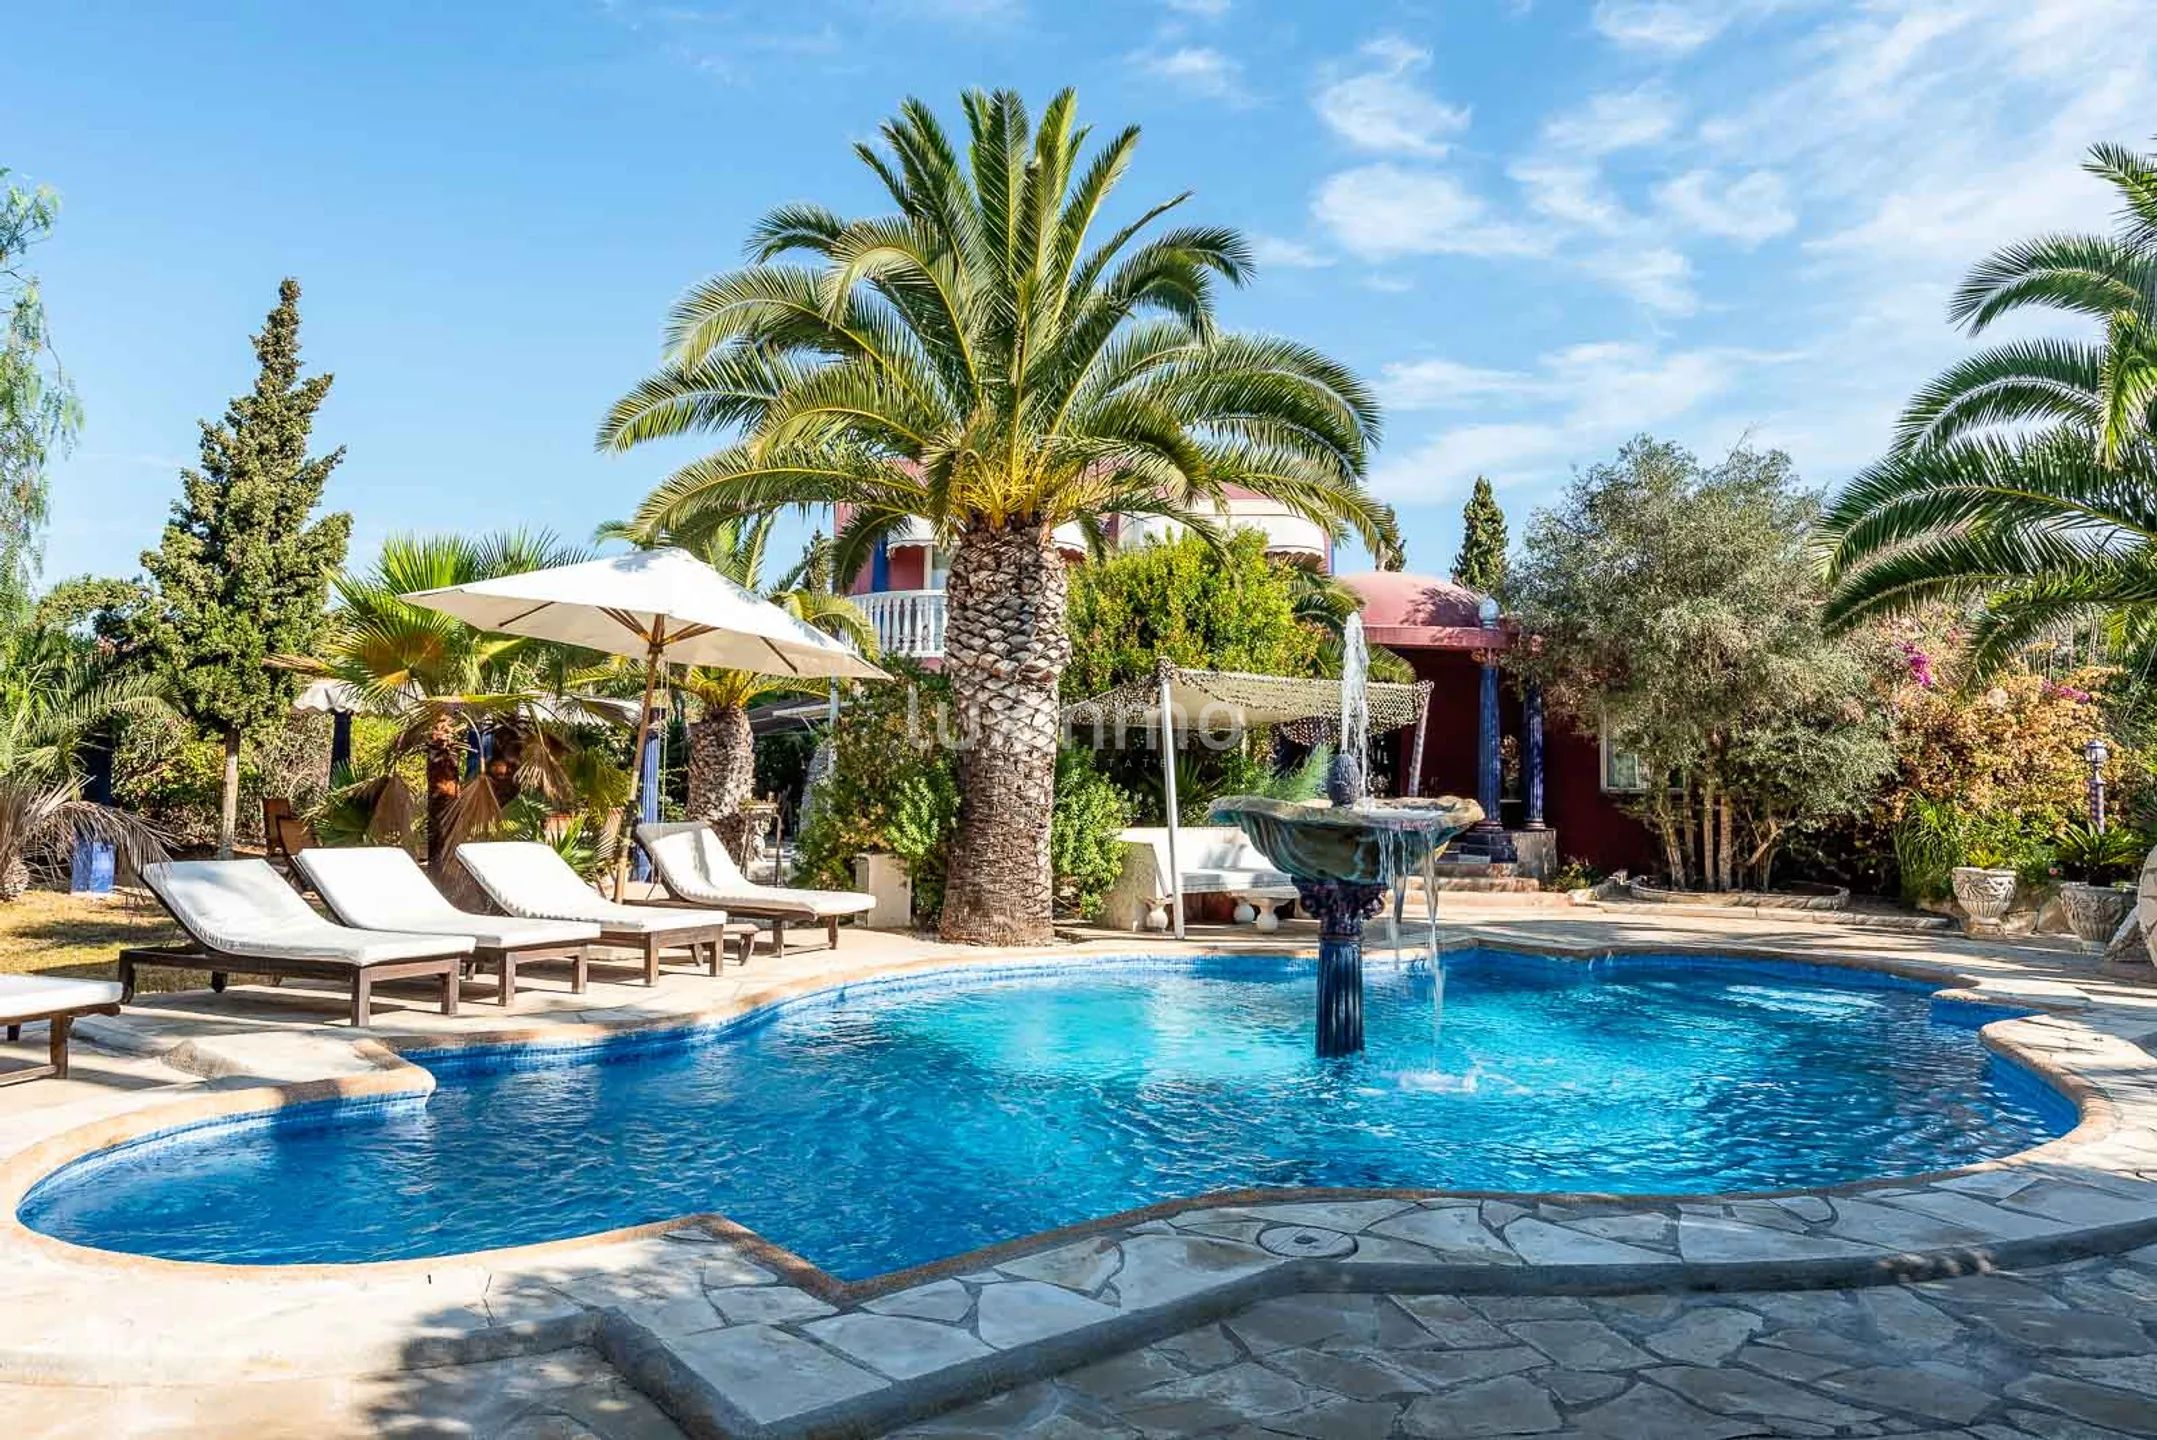 Villa Aladin: Authentische arabisch inspirierte Villa mit tropischem Garten in Sant Jordi, Ibiza